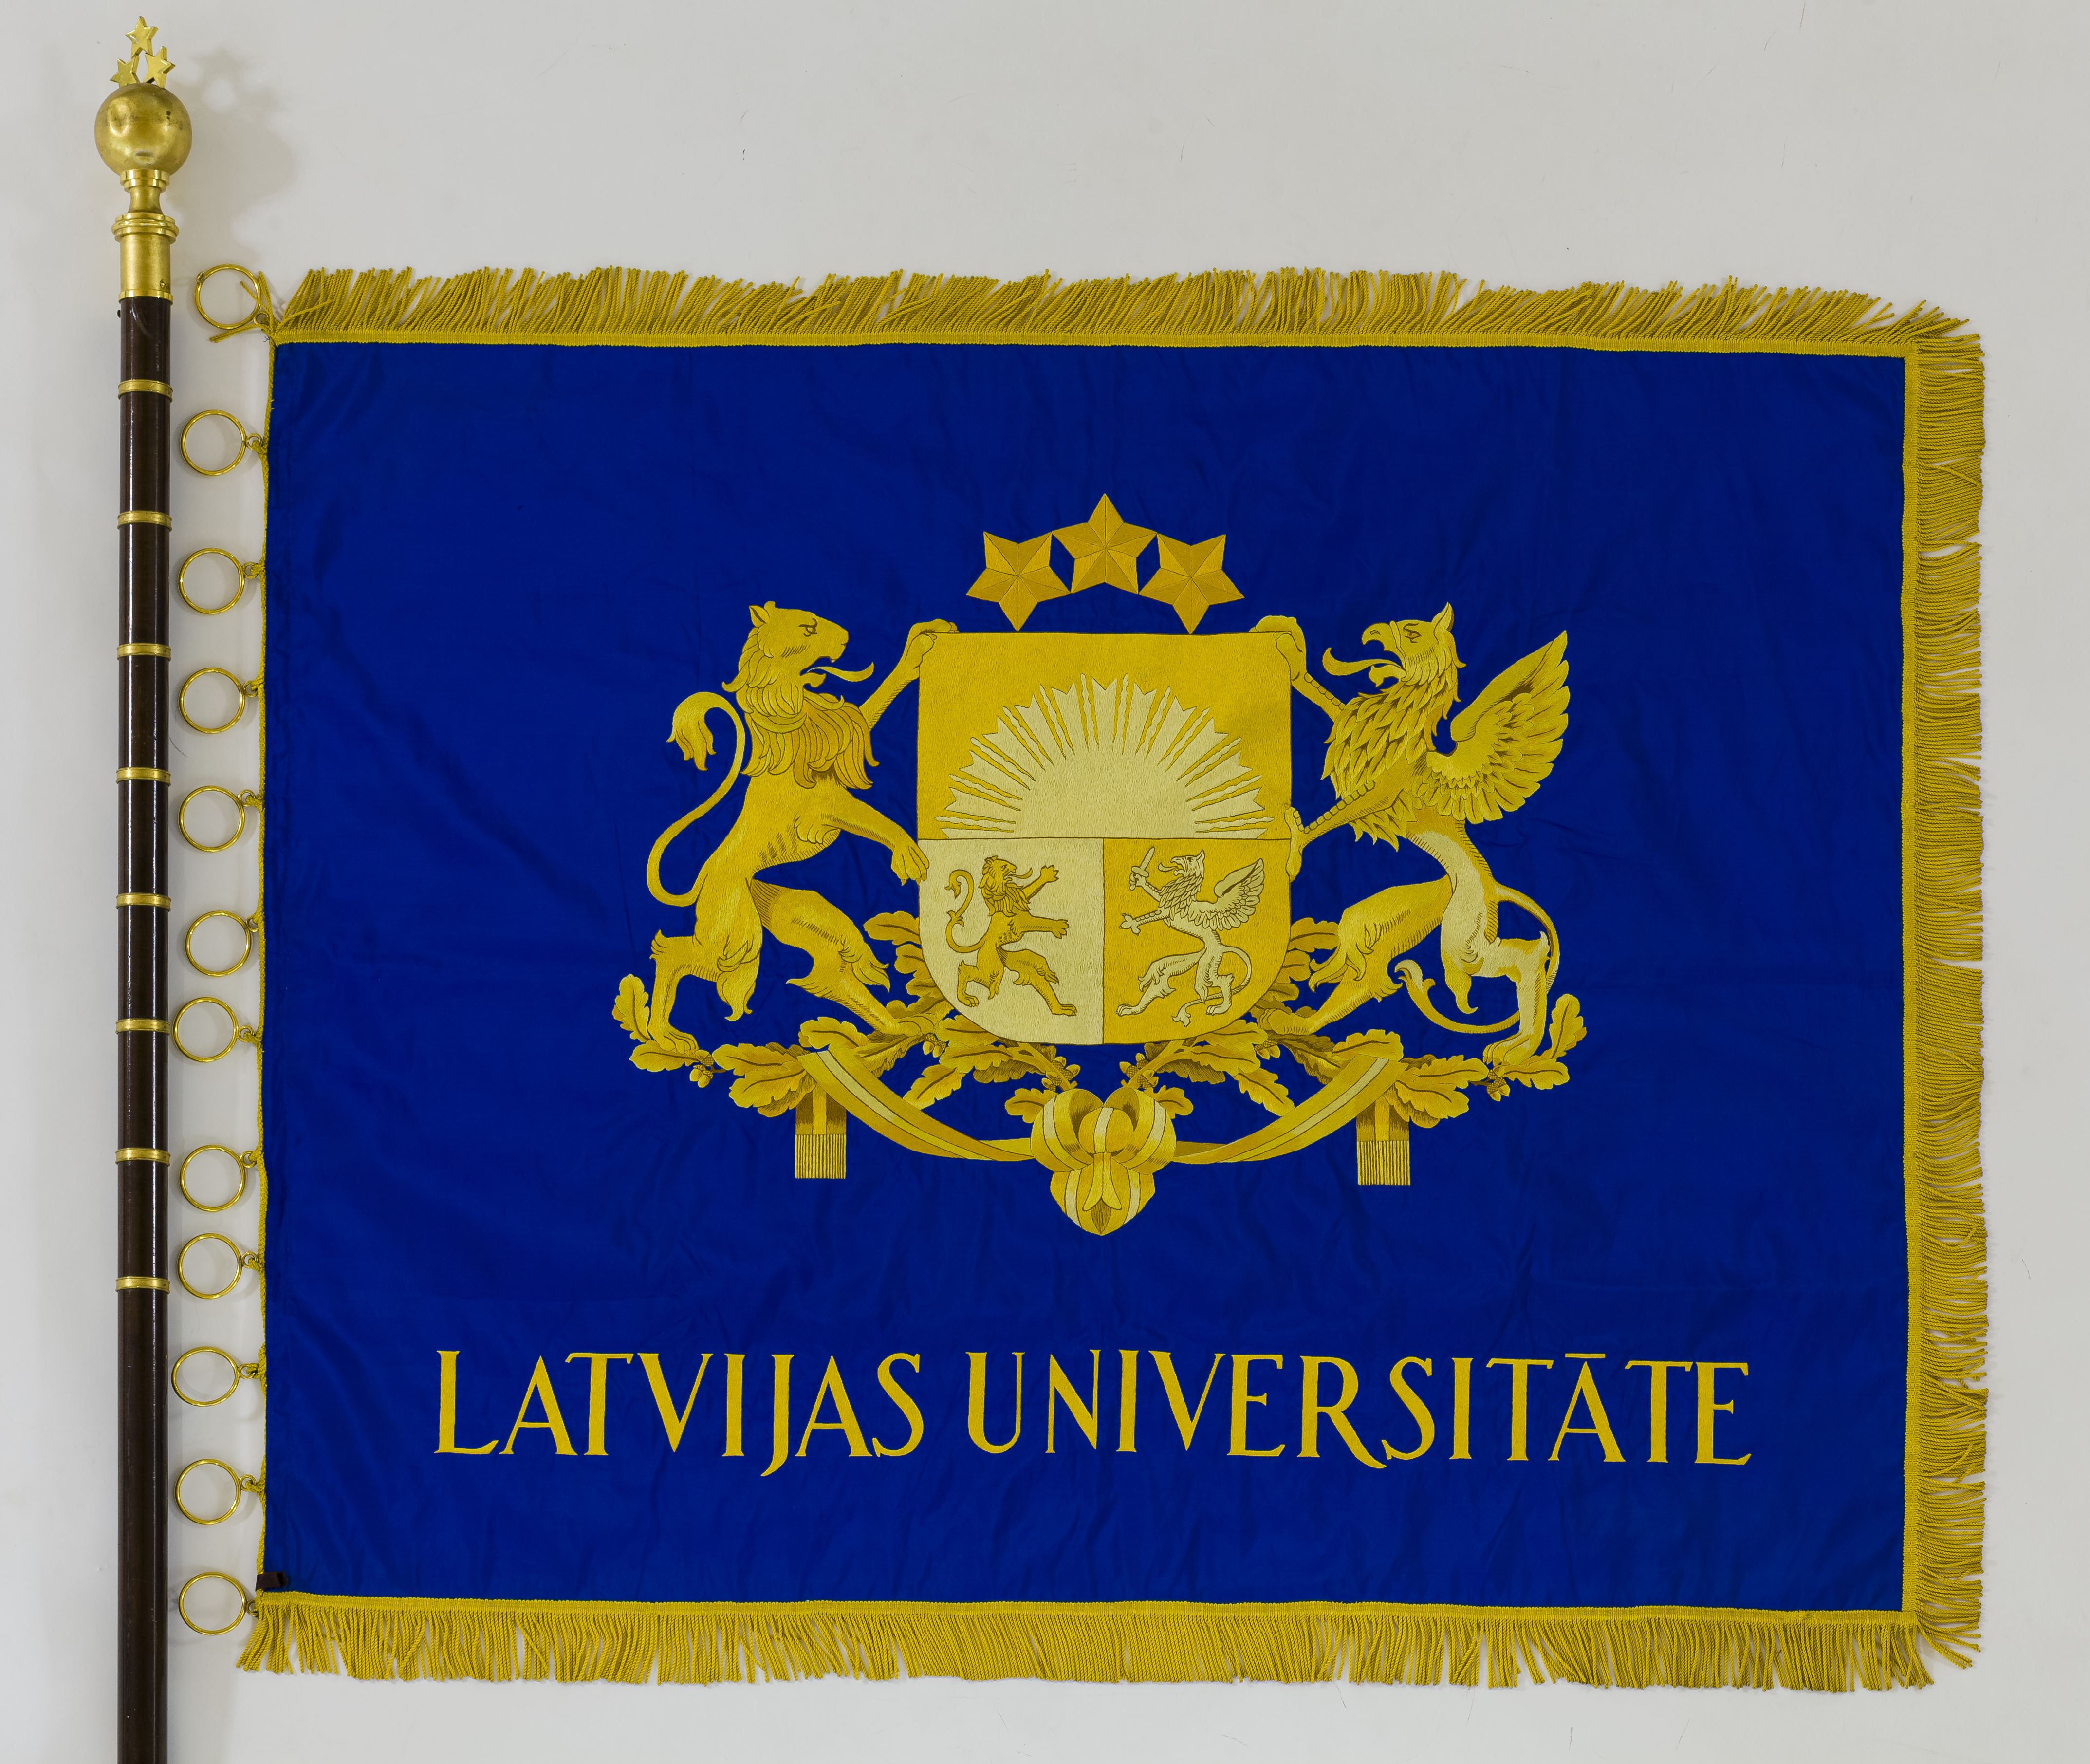 LU karoga oriģināla labā puse (RVKM krājums)